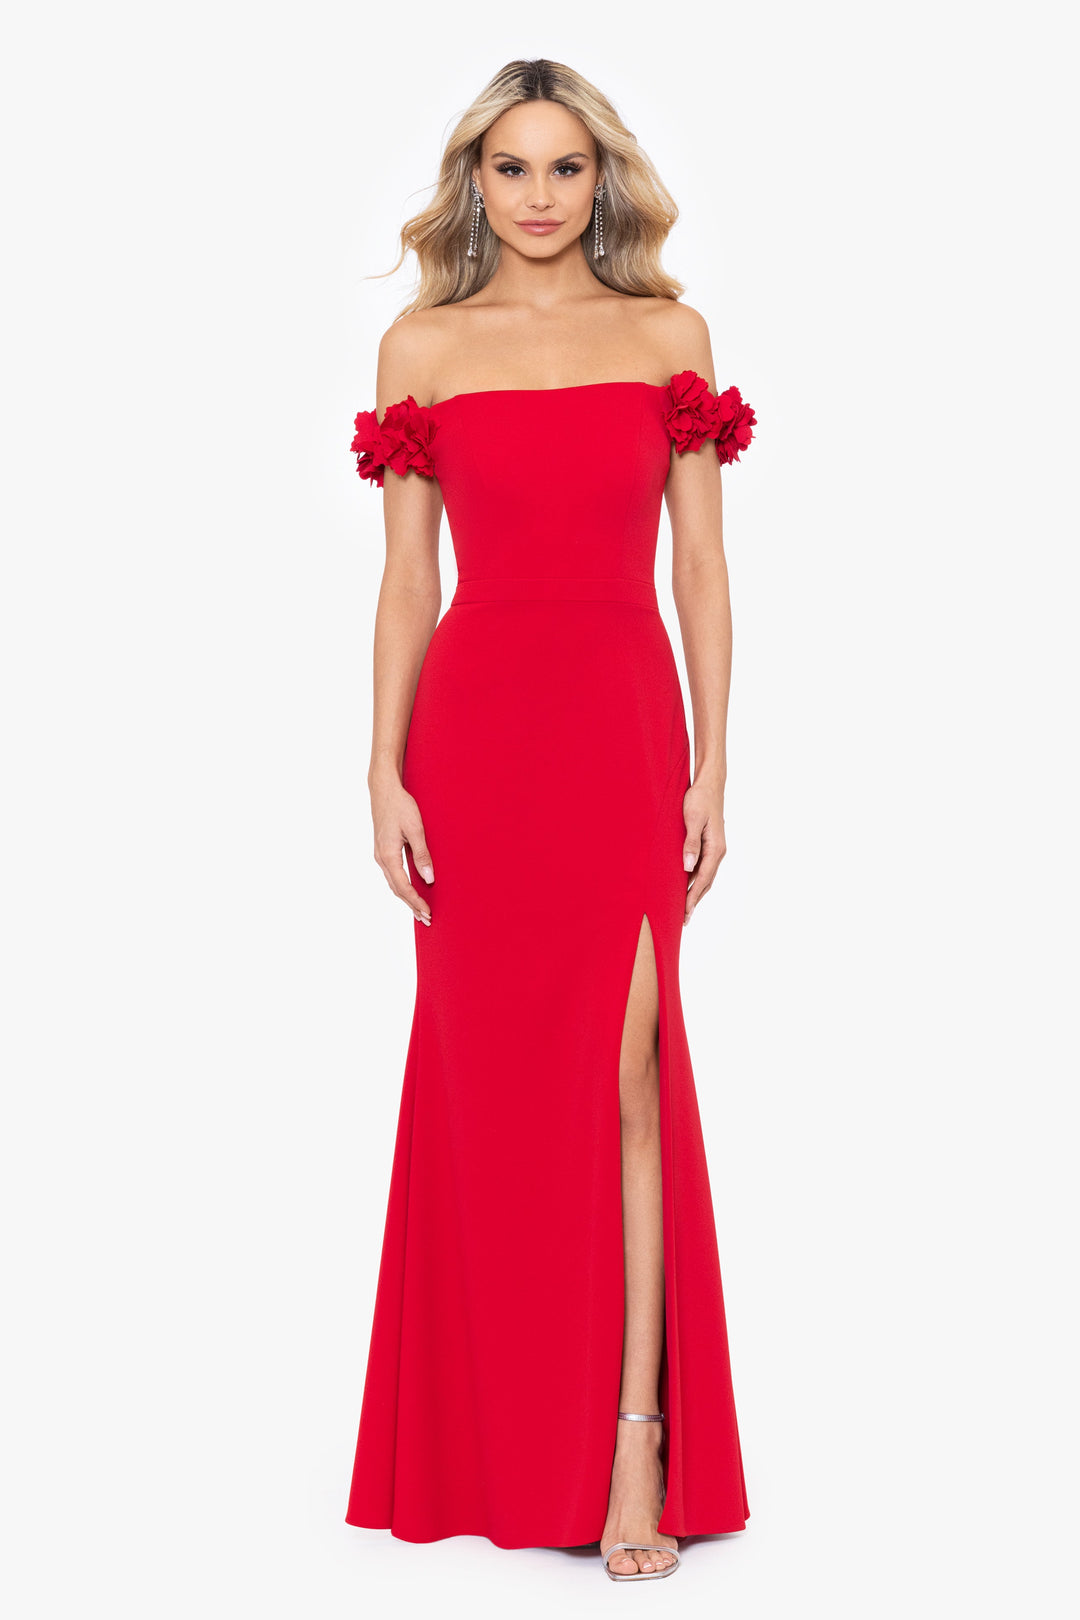 Closet Red Plus Size Boutique - Negative Space Trumpet Dress 1x-3x